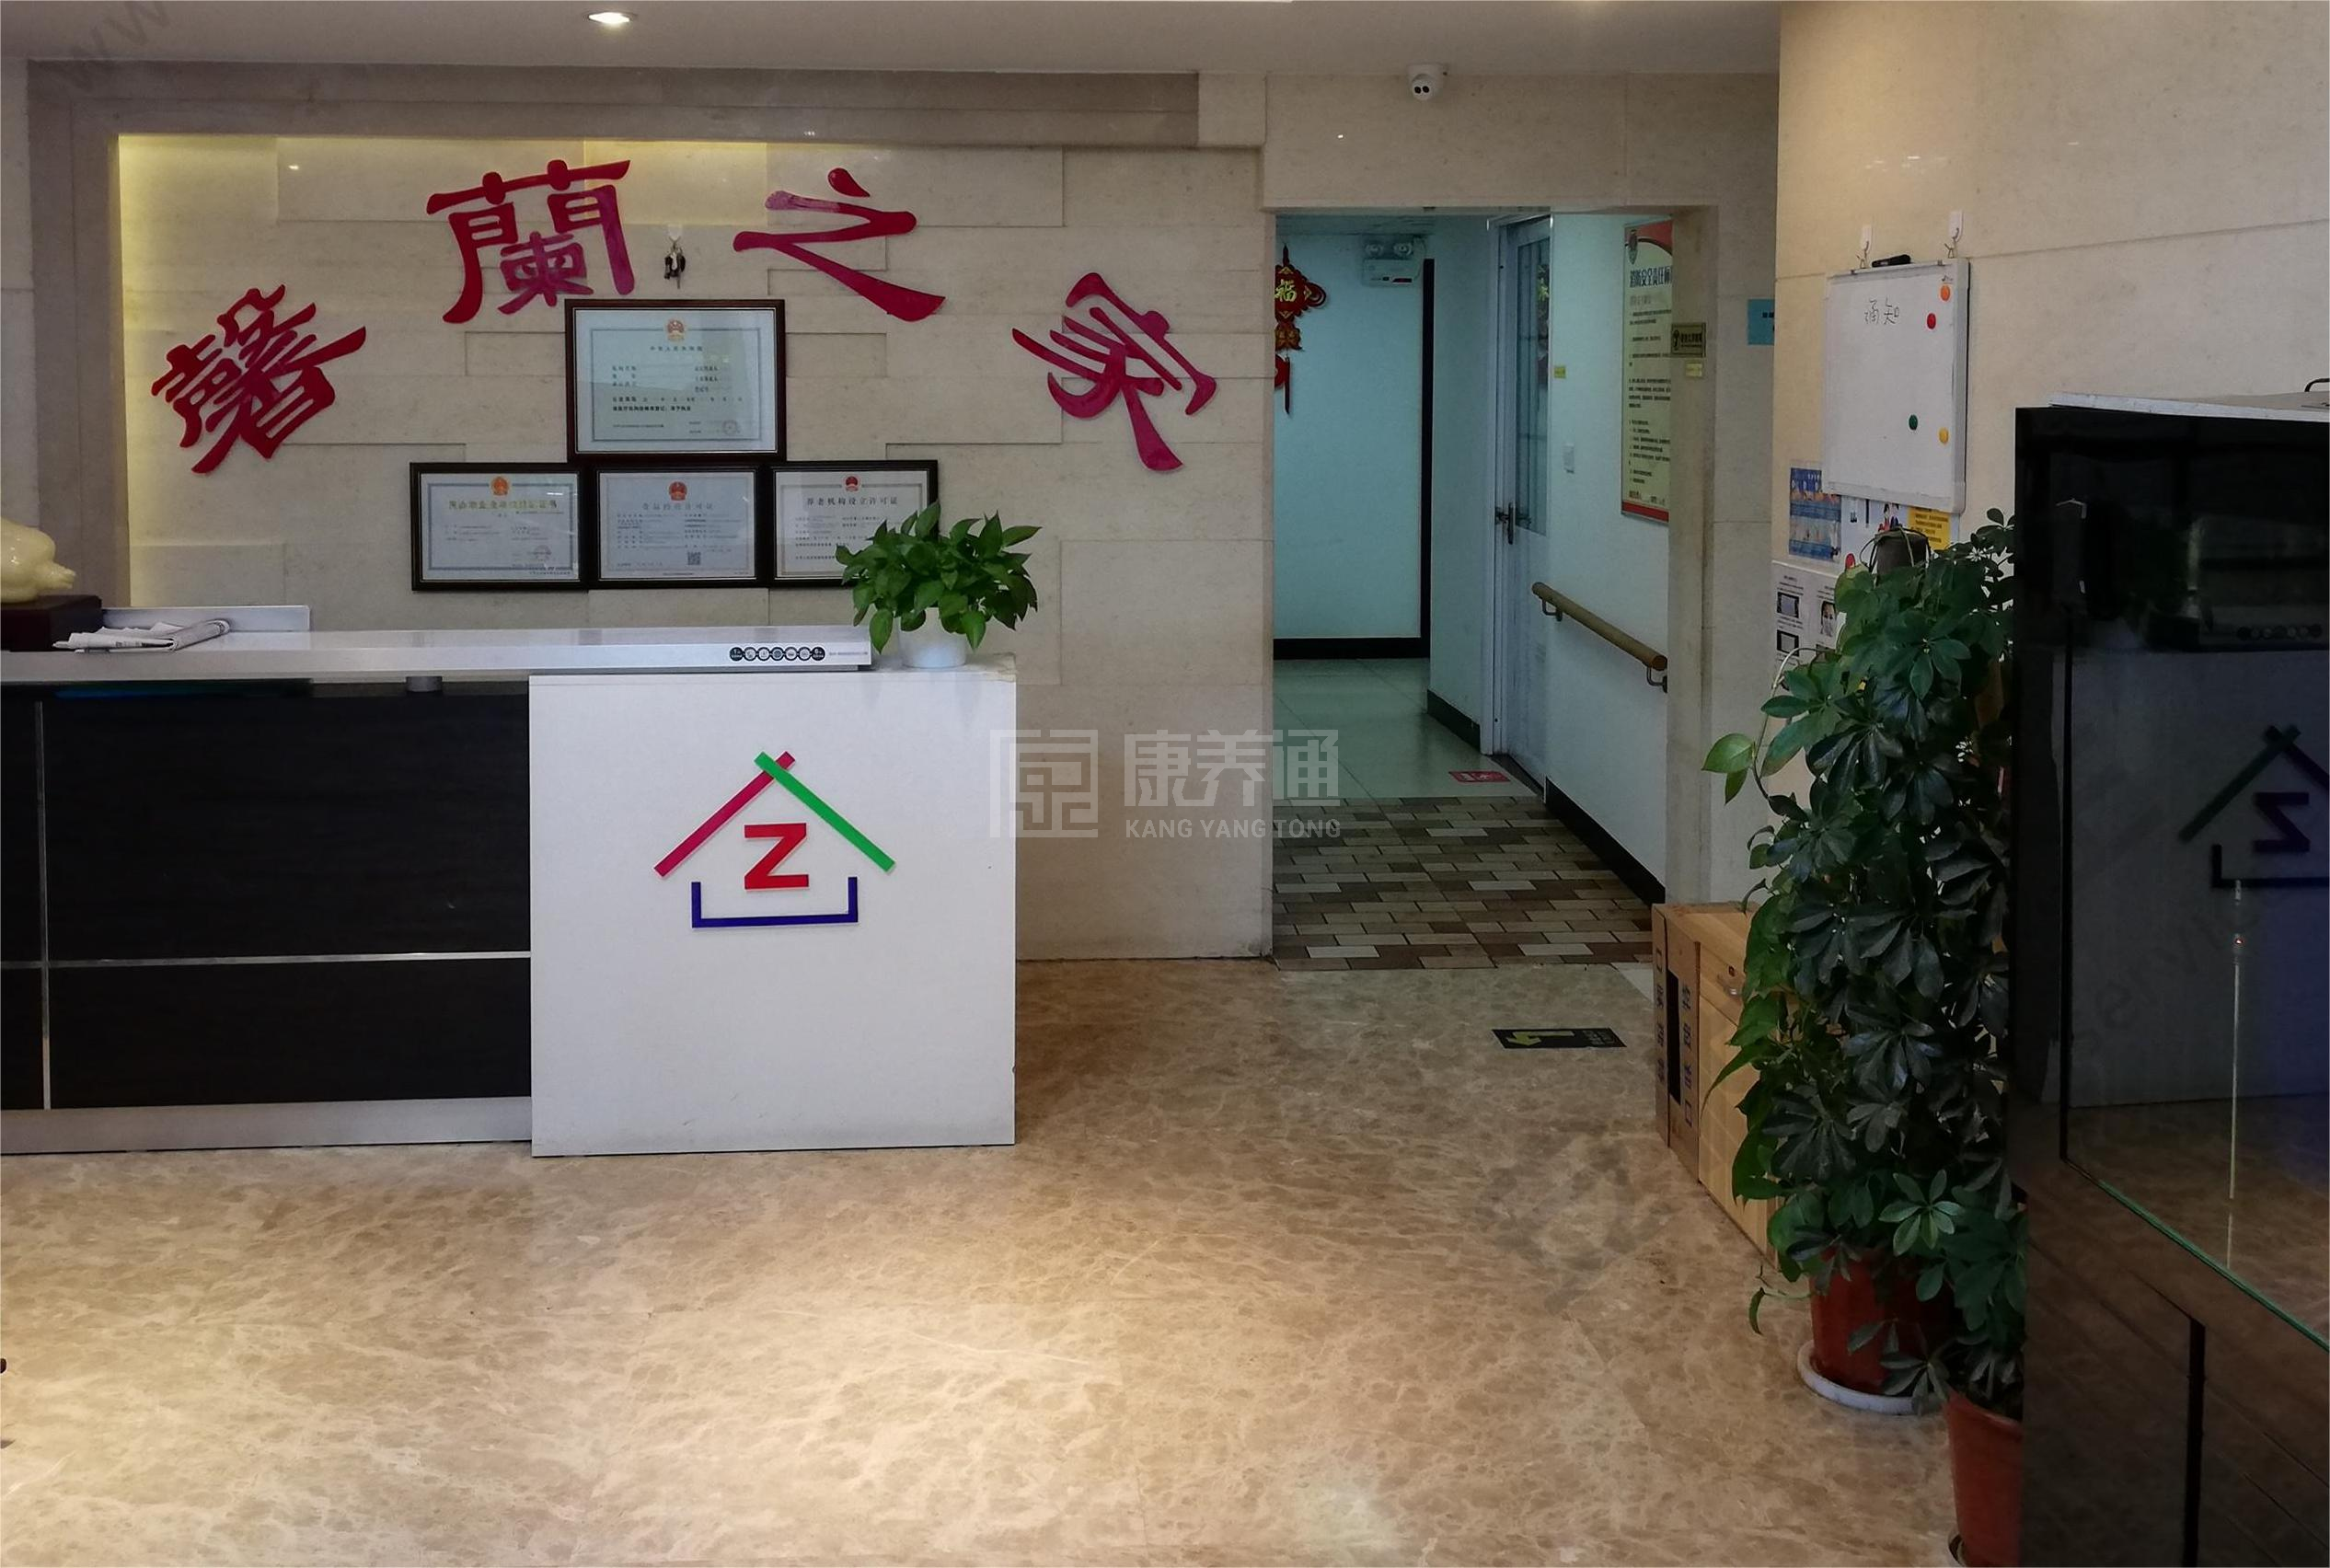 北京市朝阳区馨蘭之家老年公寓环境图-休息区